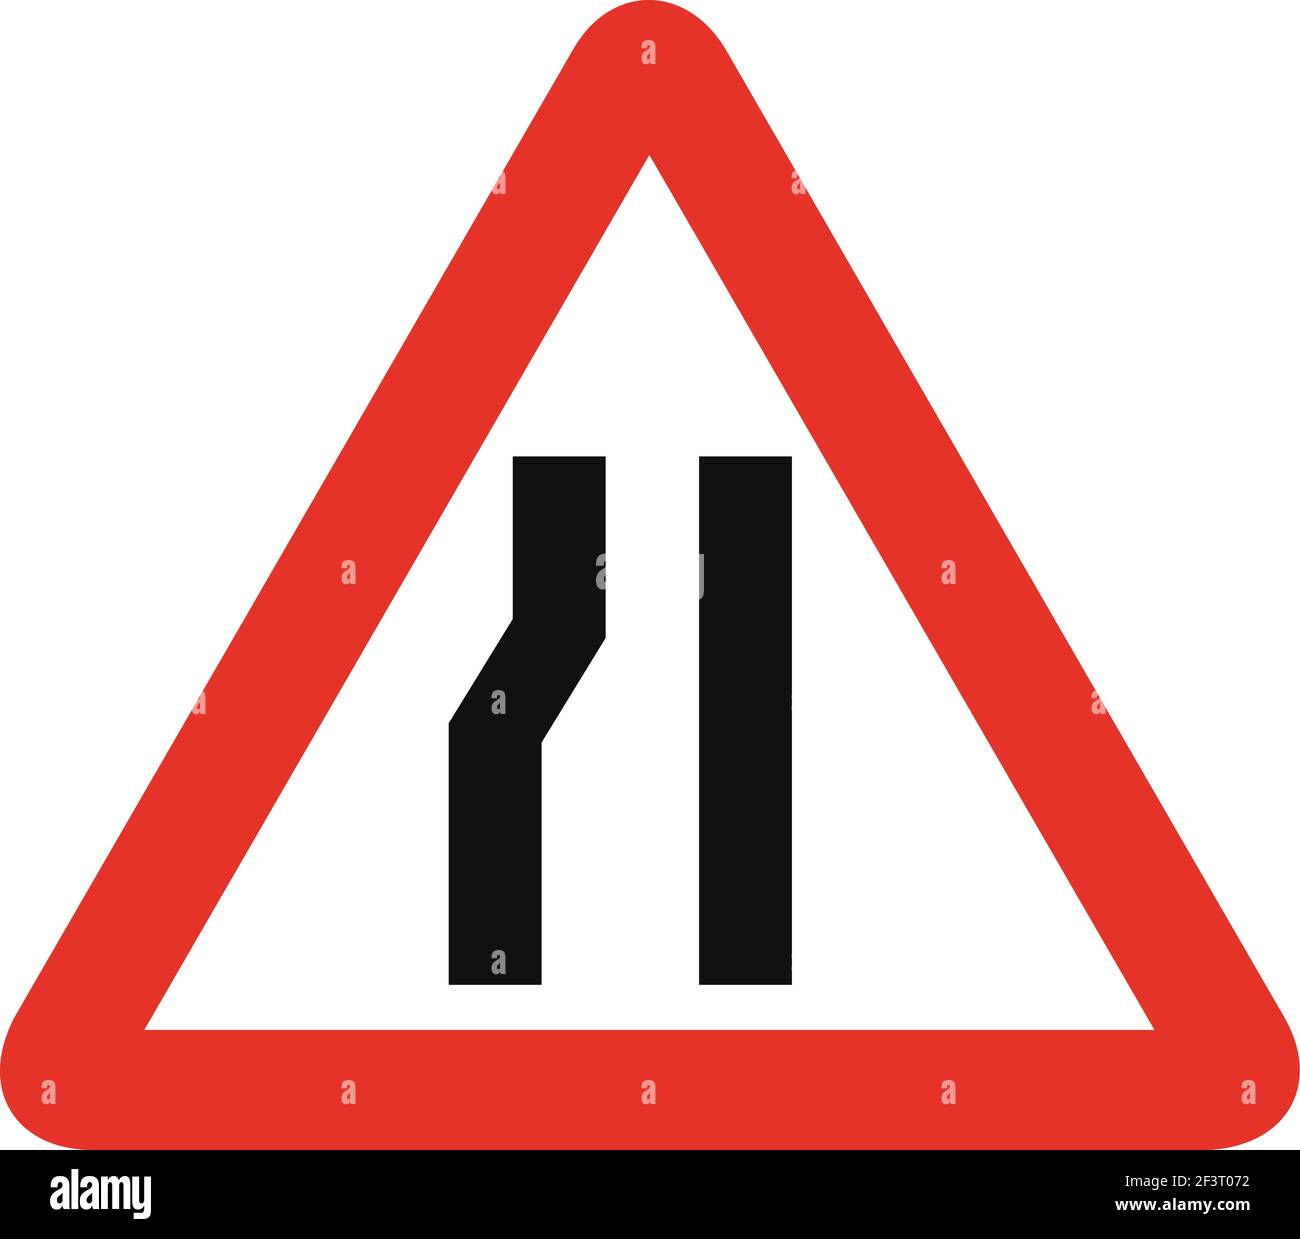 Señal de tráfico triangular en blanco y rojo, aislada sobre fondo blanco. Advertencia de carretera estrecha adelante en el lado izquierdo Ilustración del Vector